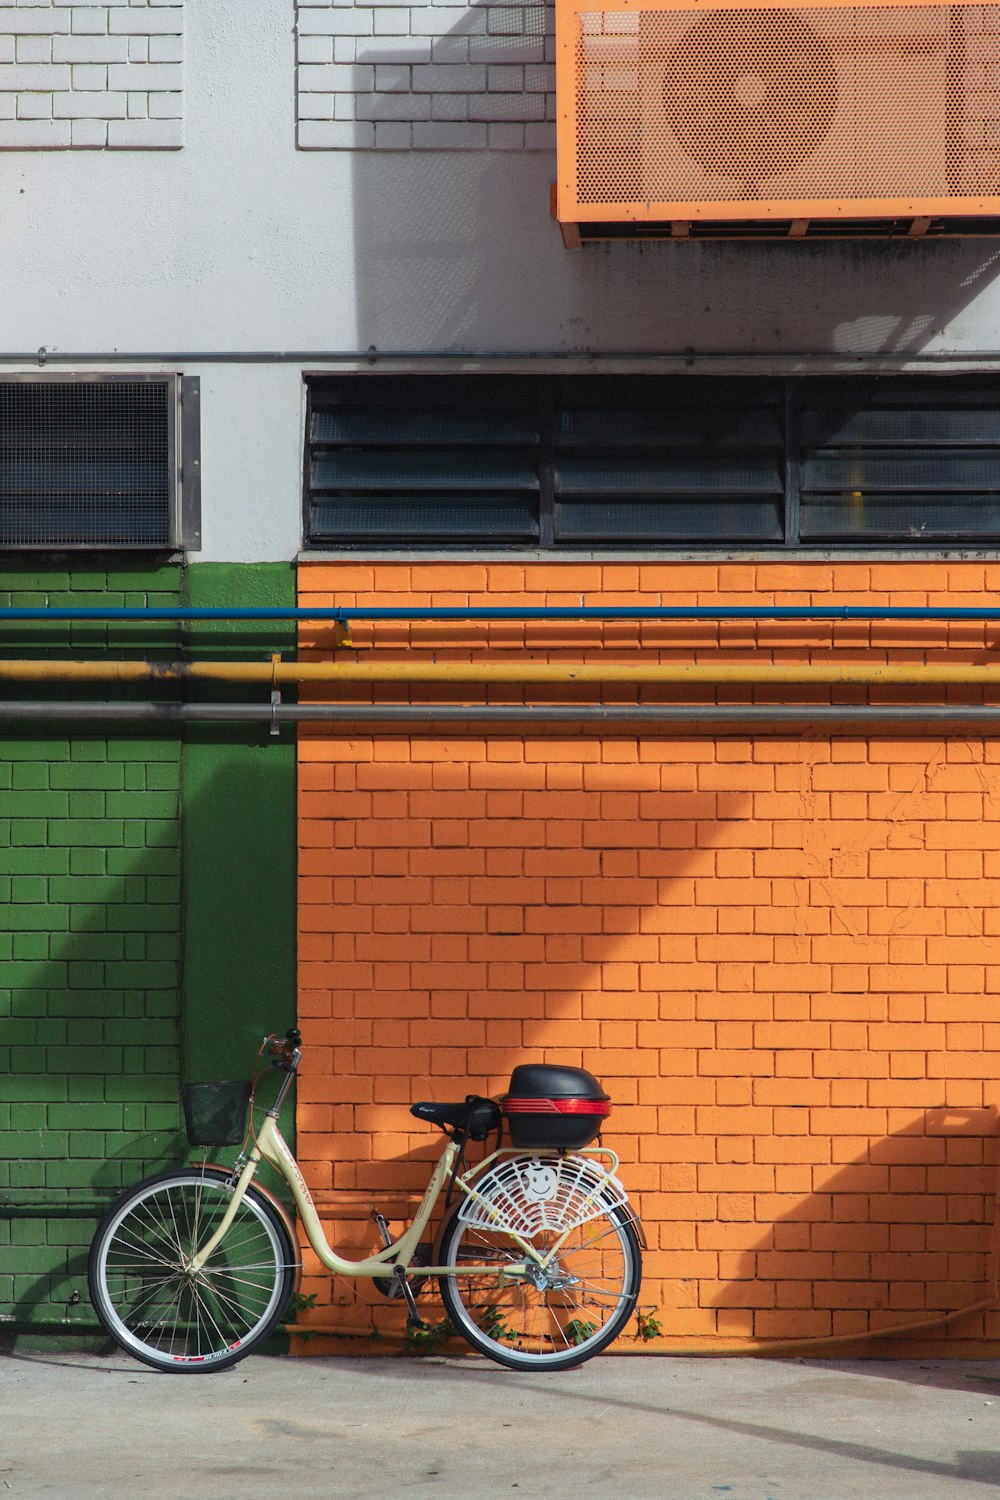 녹색과 갈색 콘크리트 건물 옆에 주차된 파란색과 흰색 통근 자전거